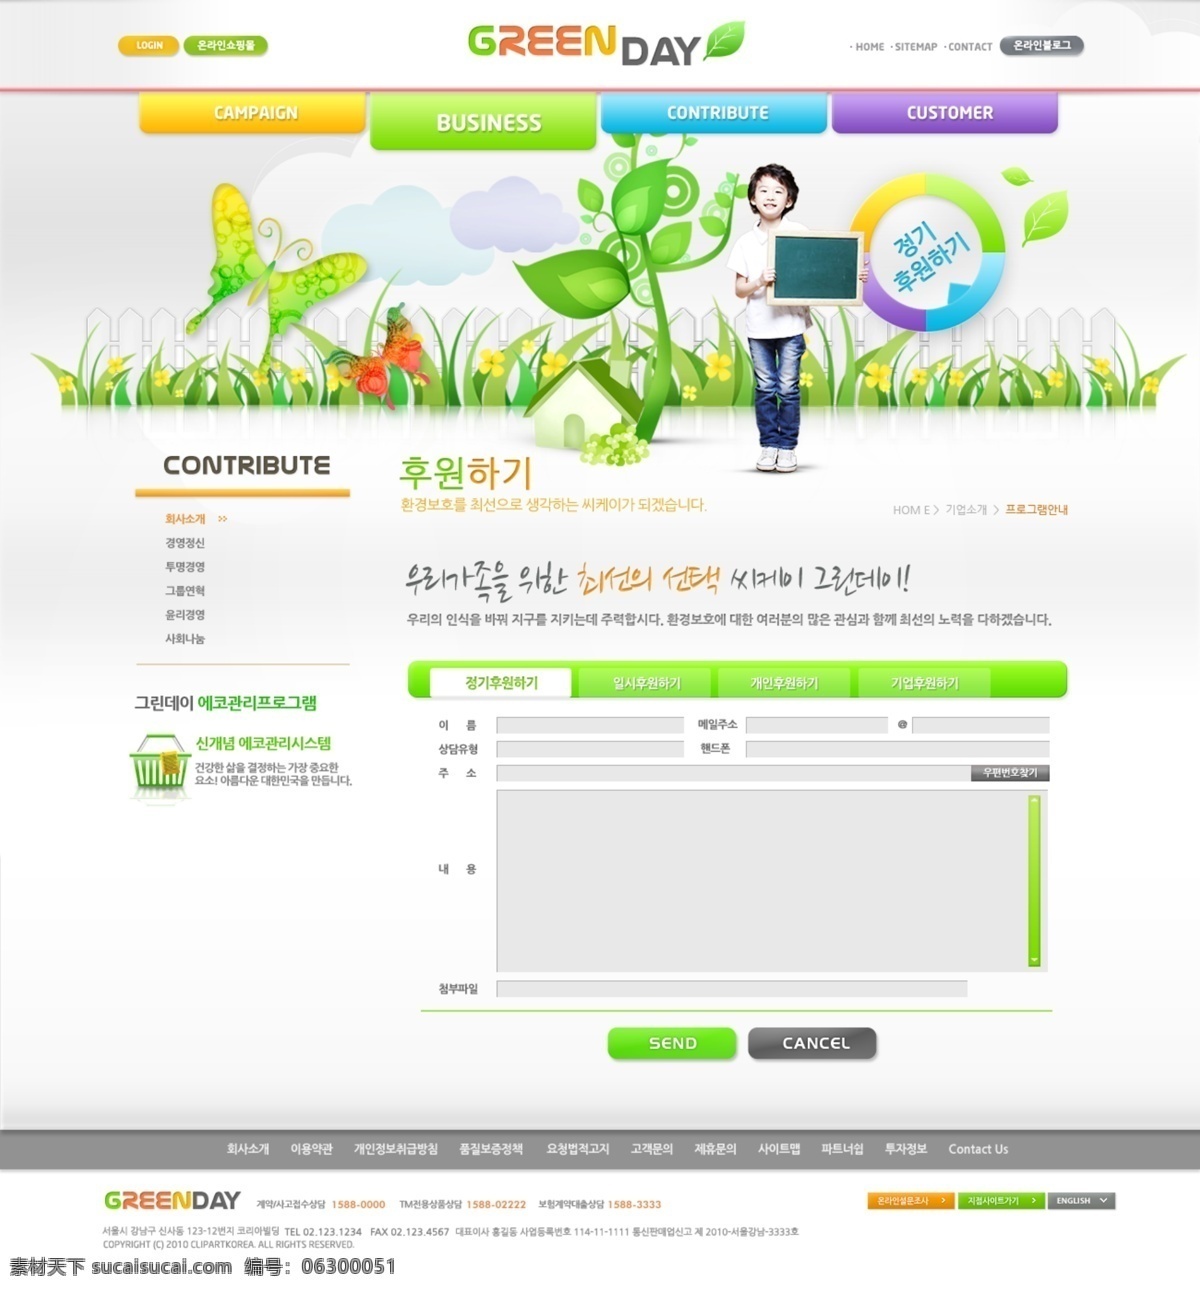 绿色环保 网页 界面设计 网页模板 网页素材 韩国网站 网页模板素材 网站模板 网页界面模板 网页设计